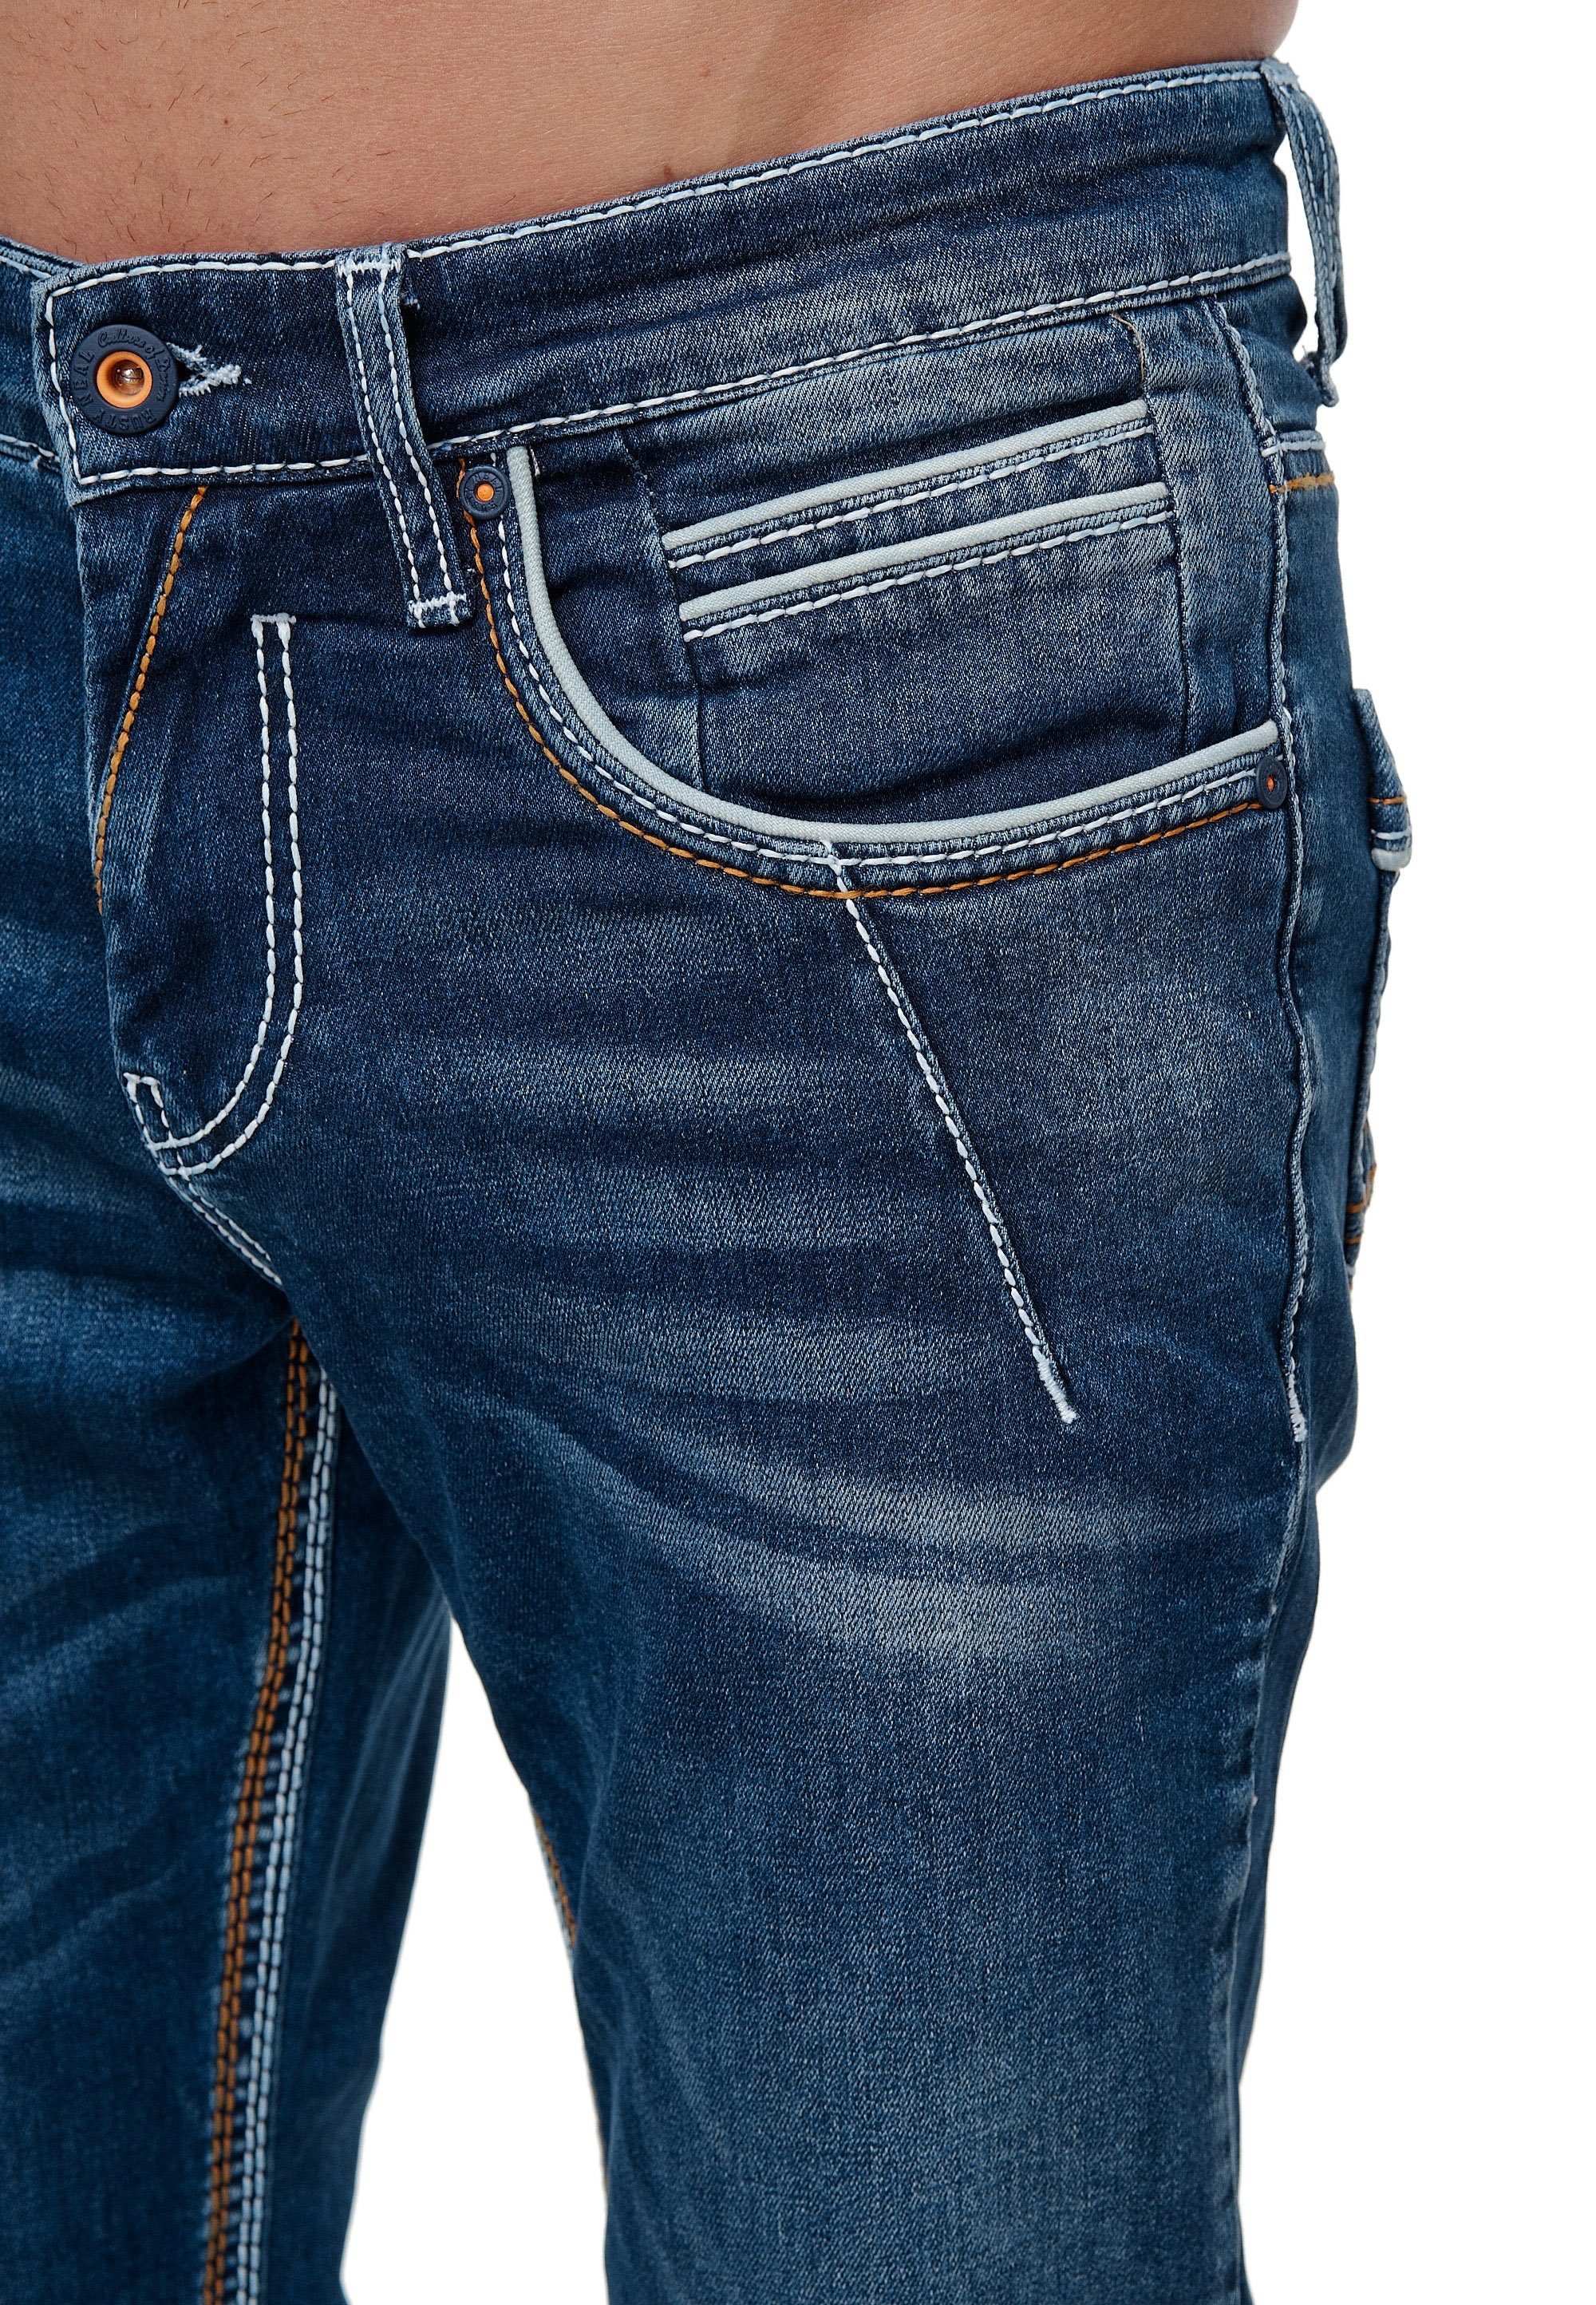 49 YORK mit trendigen Straight-Jeans Rusty NEW Ziernähten Neal